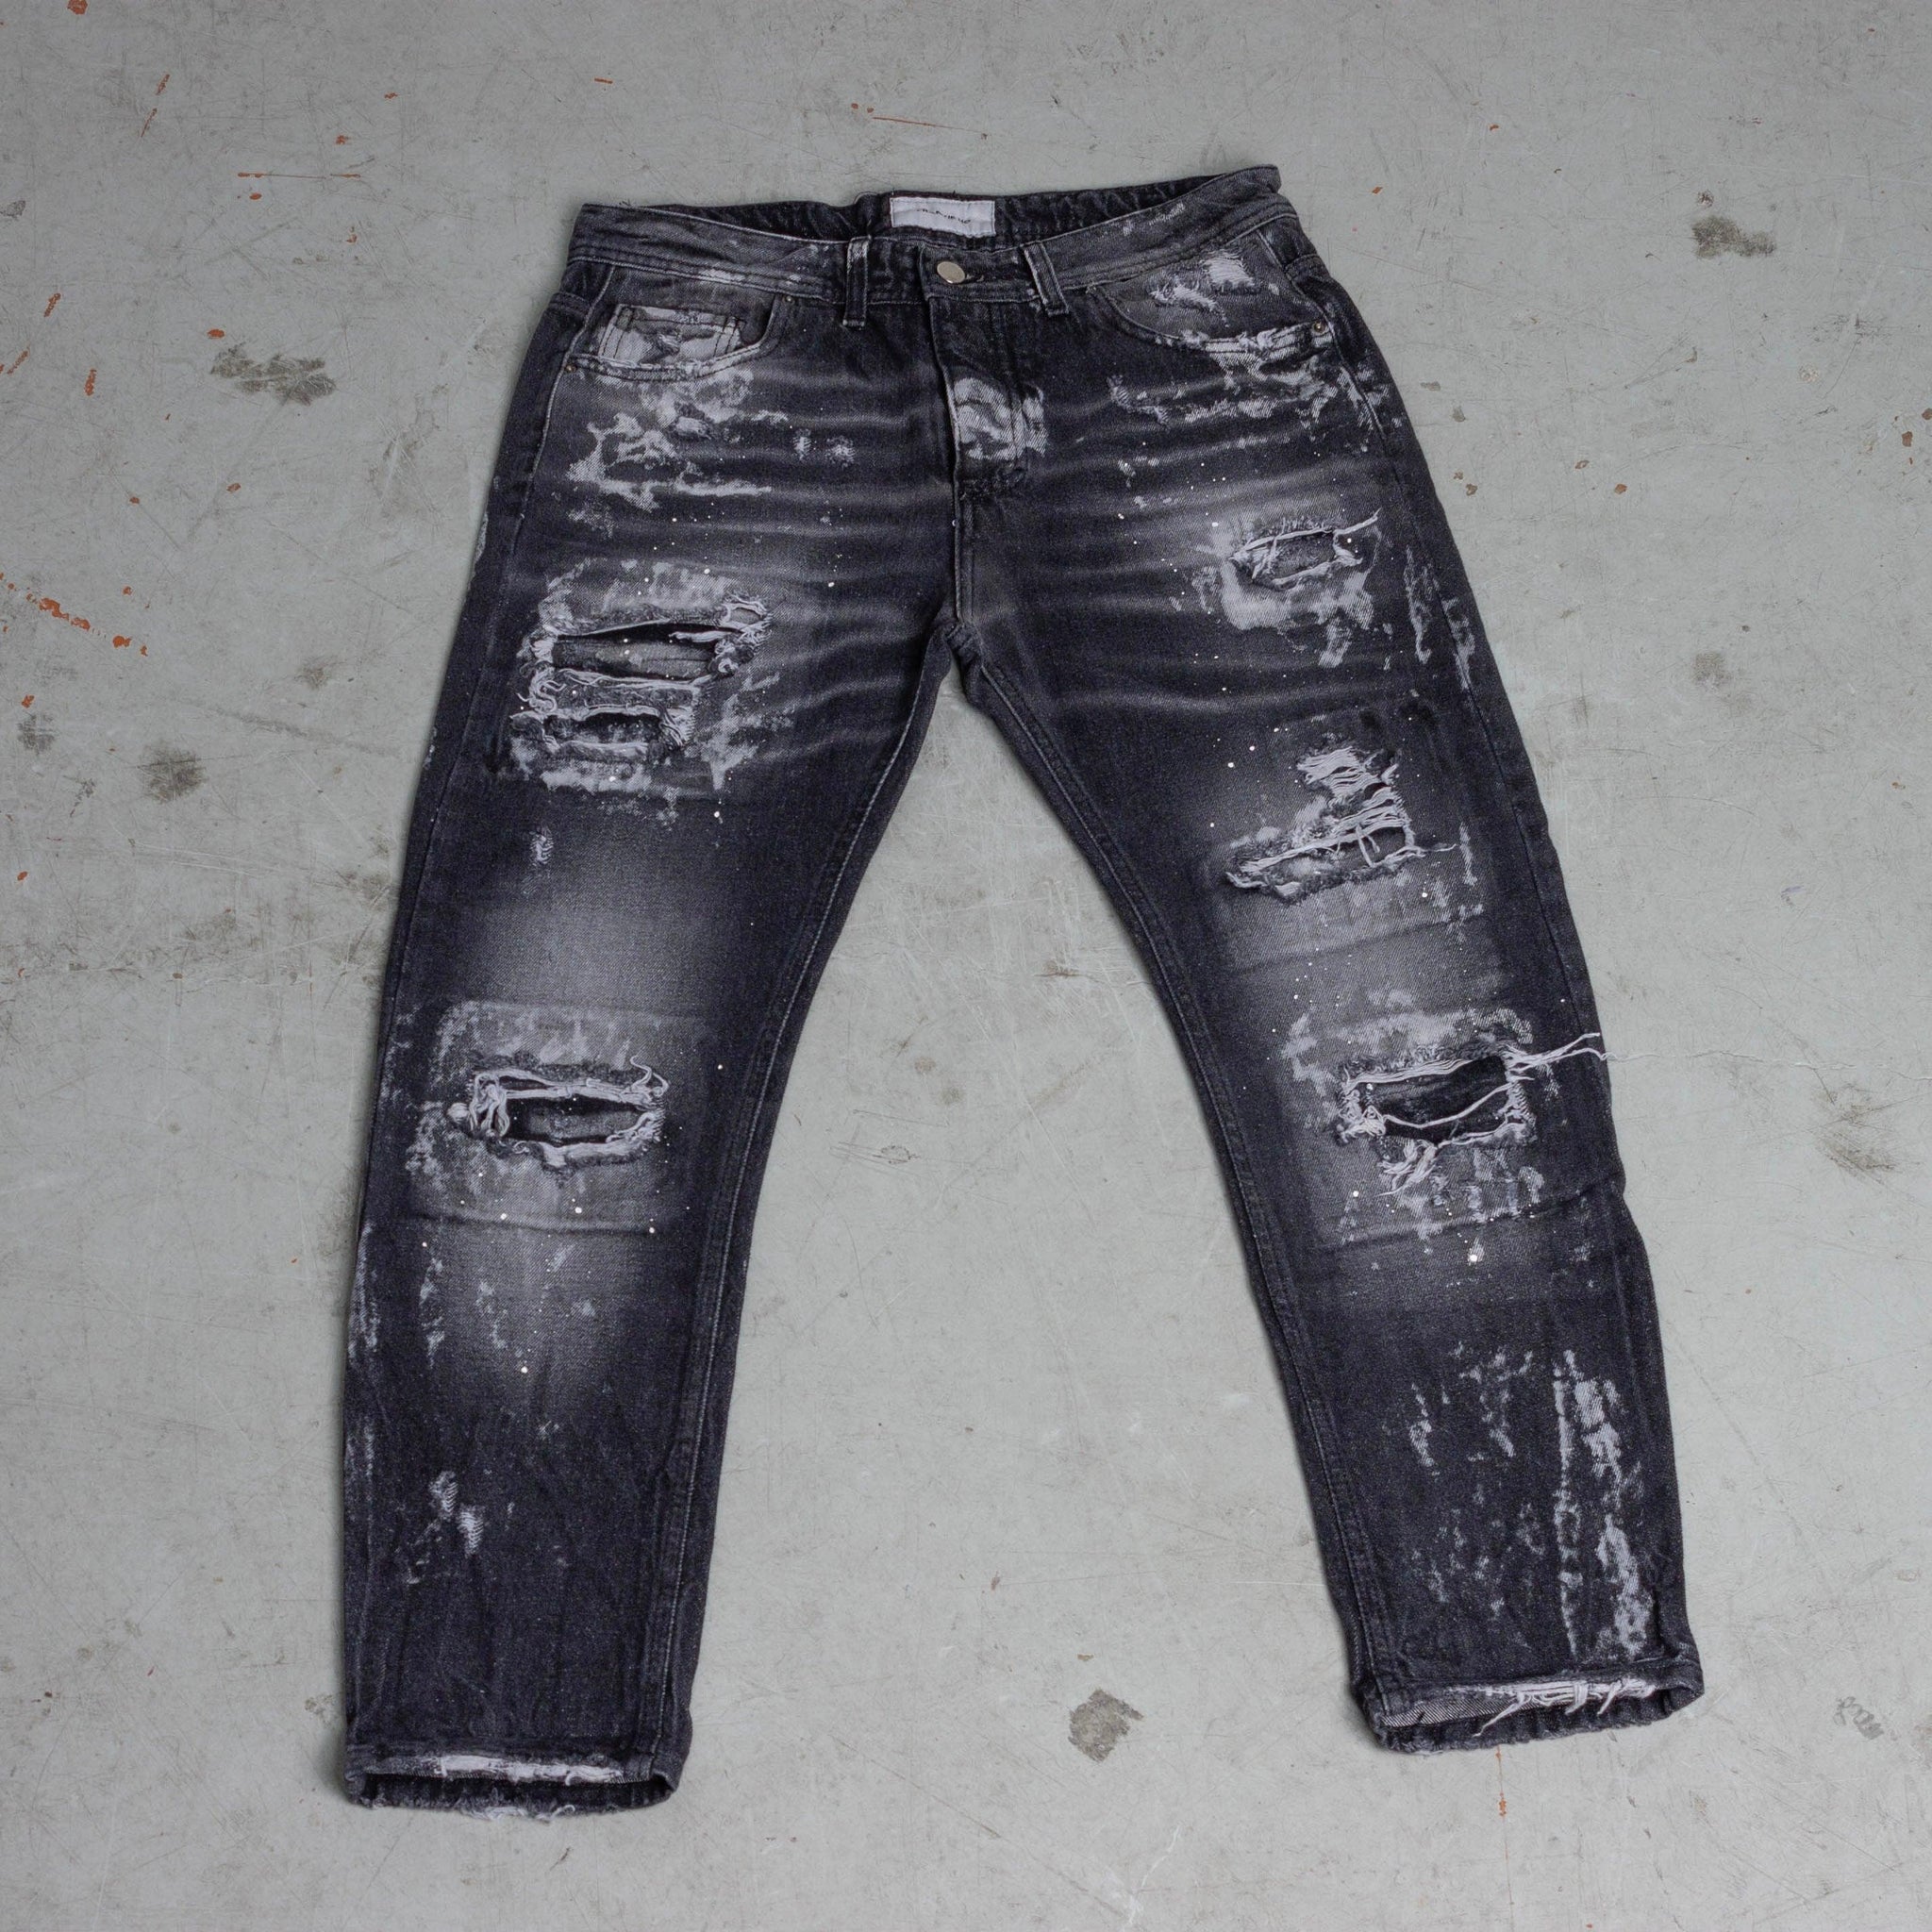 Jeans grey distressed splattered - FRANKIE HO